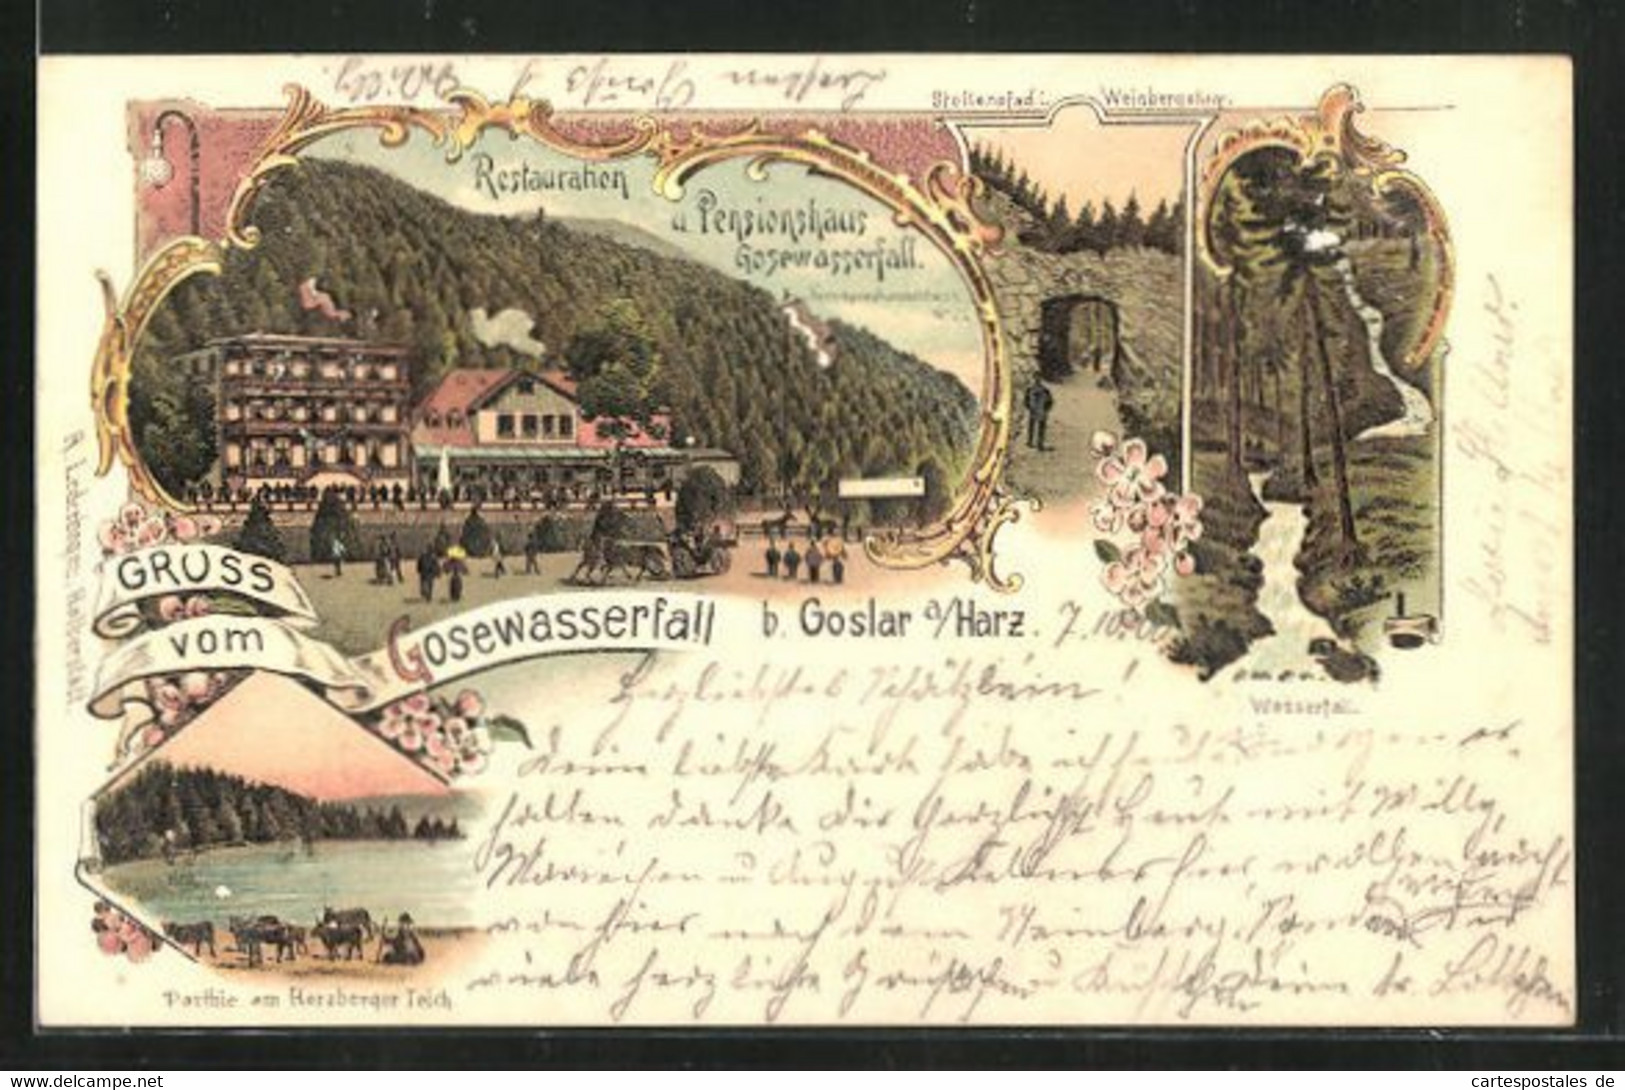 Lithographie Goslar, Restaurant Und Pensionshaus Gosewasserfall, Partie Am Herzberger Teich - Herzberg